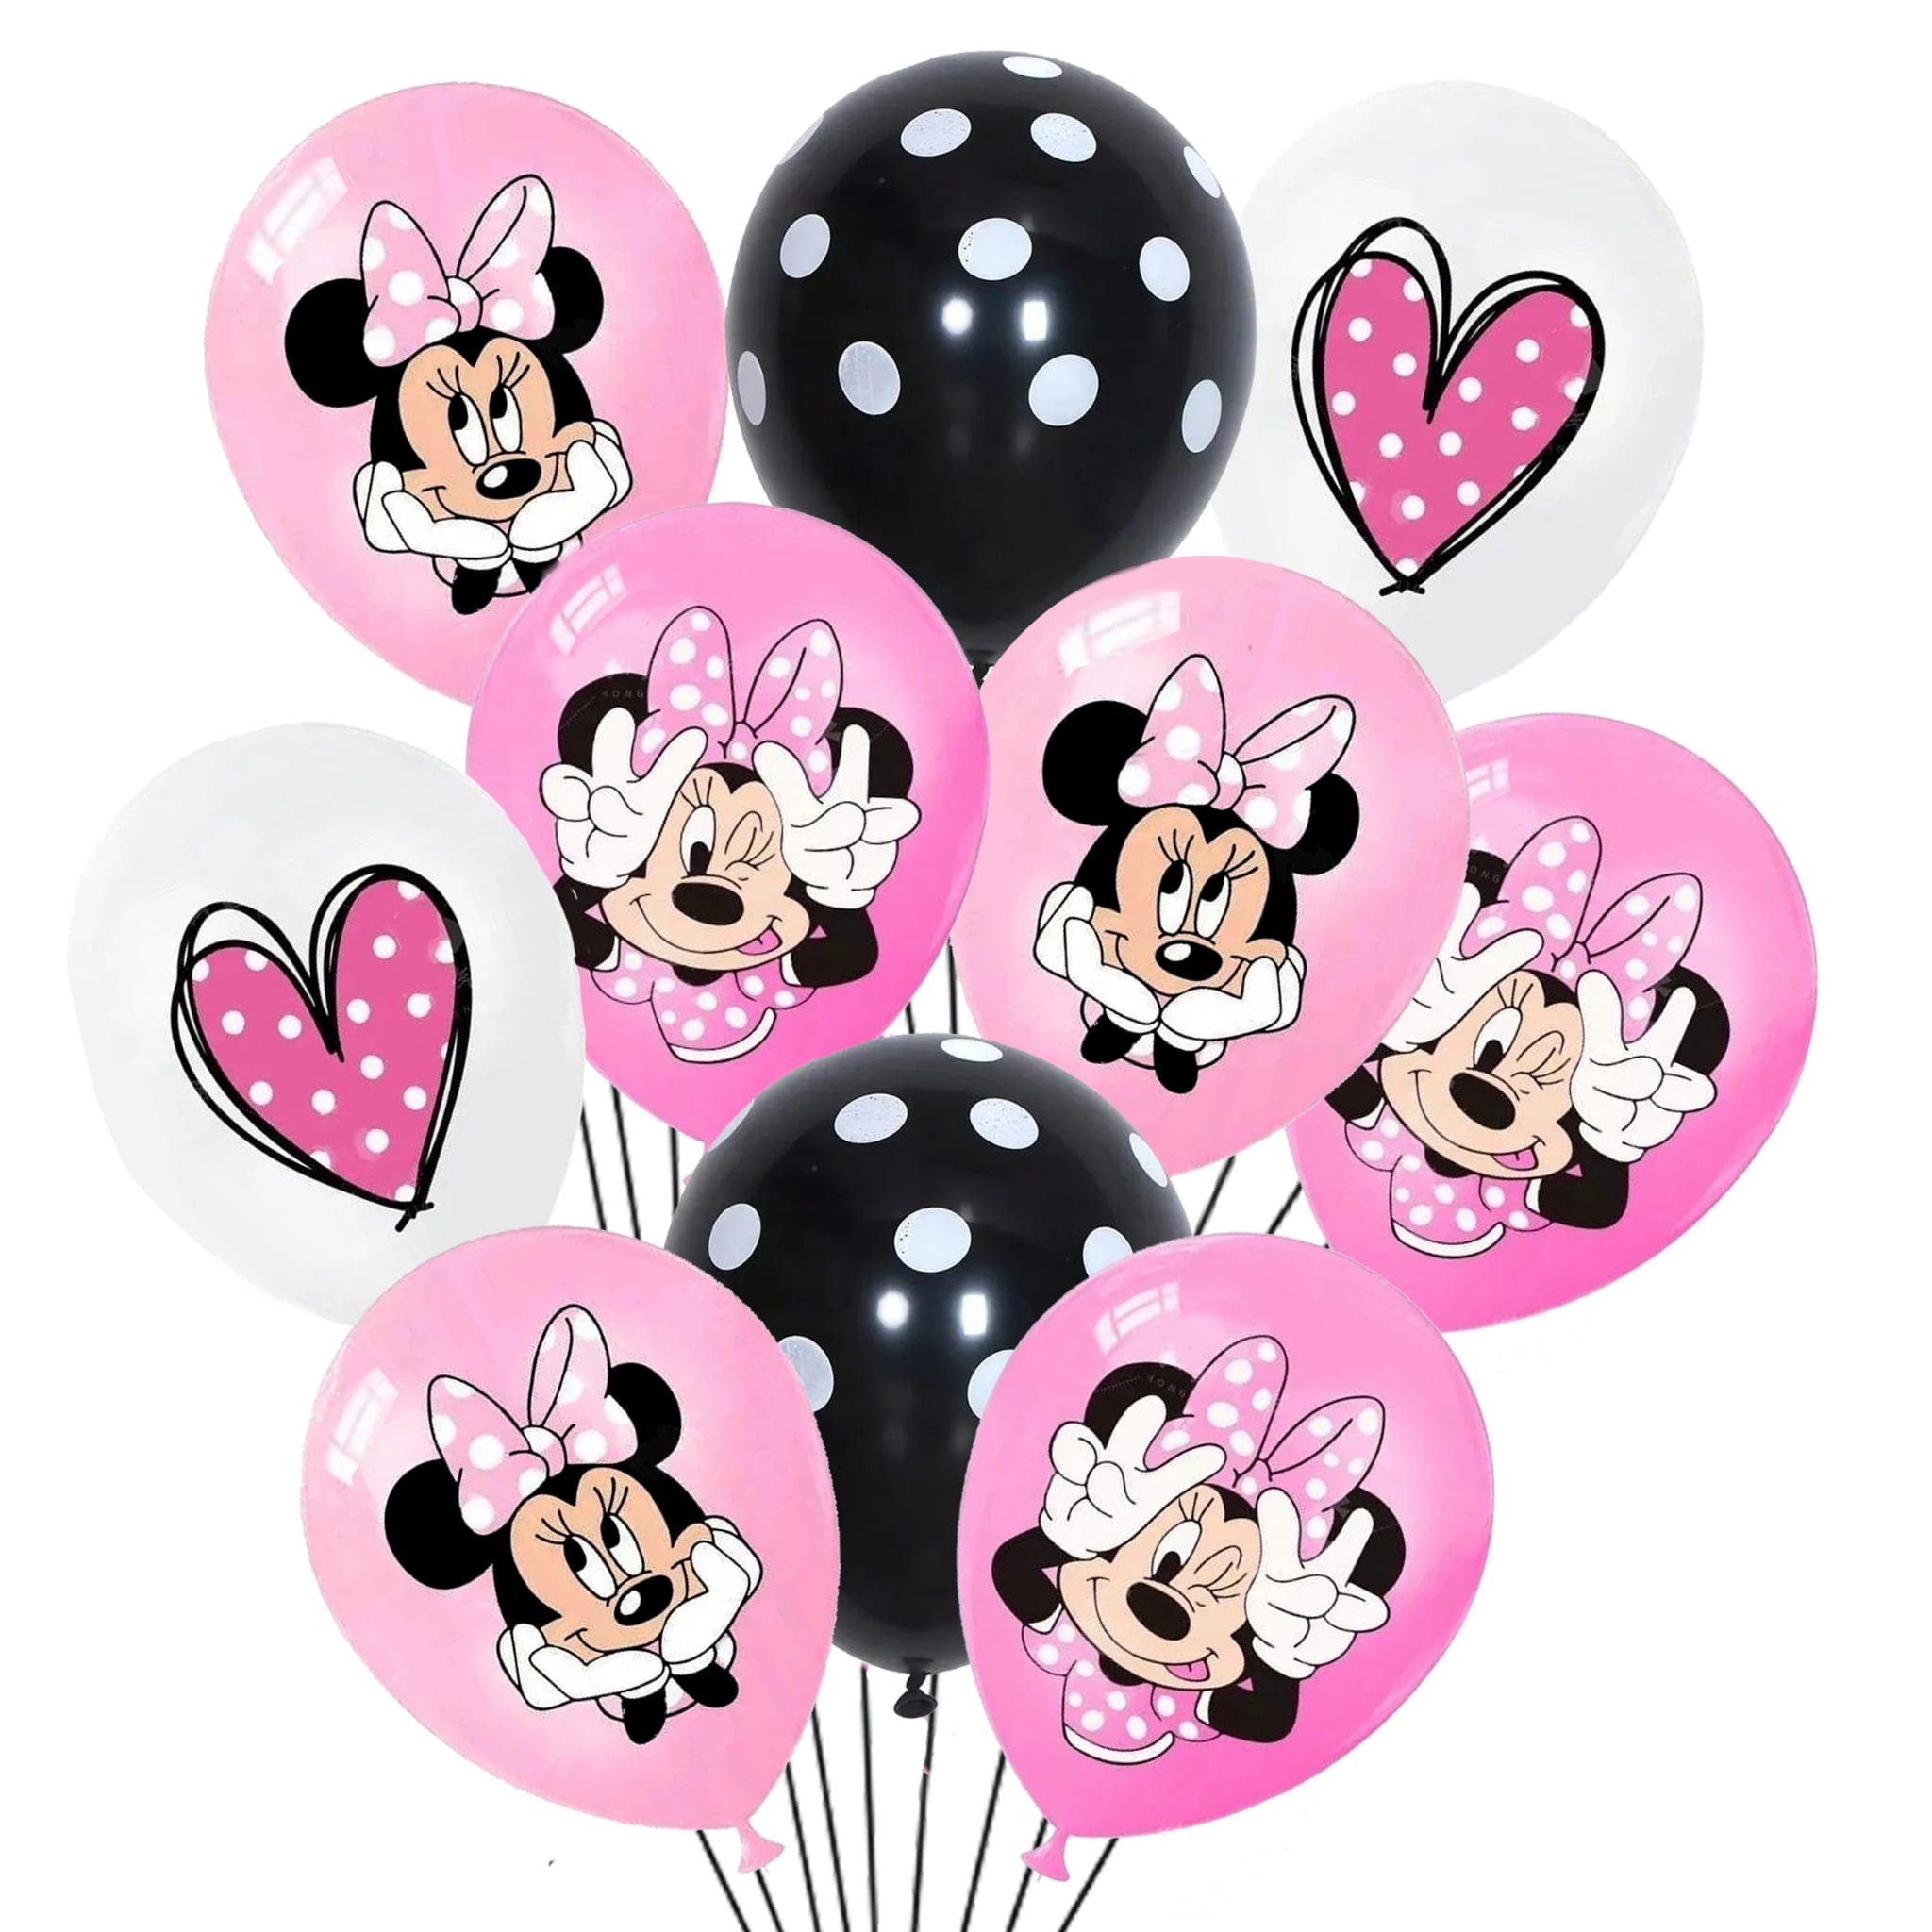 Festivalartikel Luftballon Minnie Mouse LUFTBALLONS GEBURTSTAG LUFTBALLON SET 10 Stk